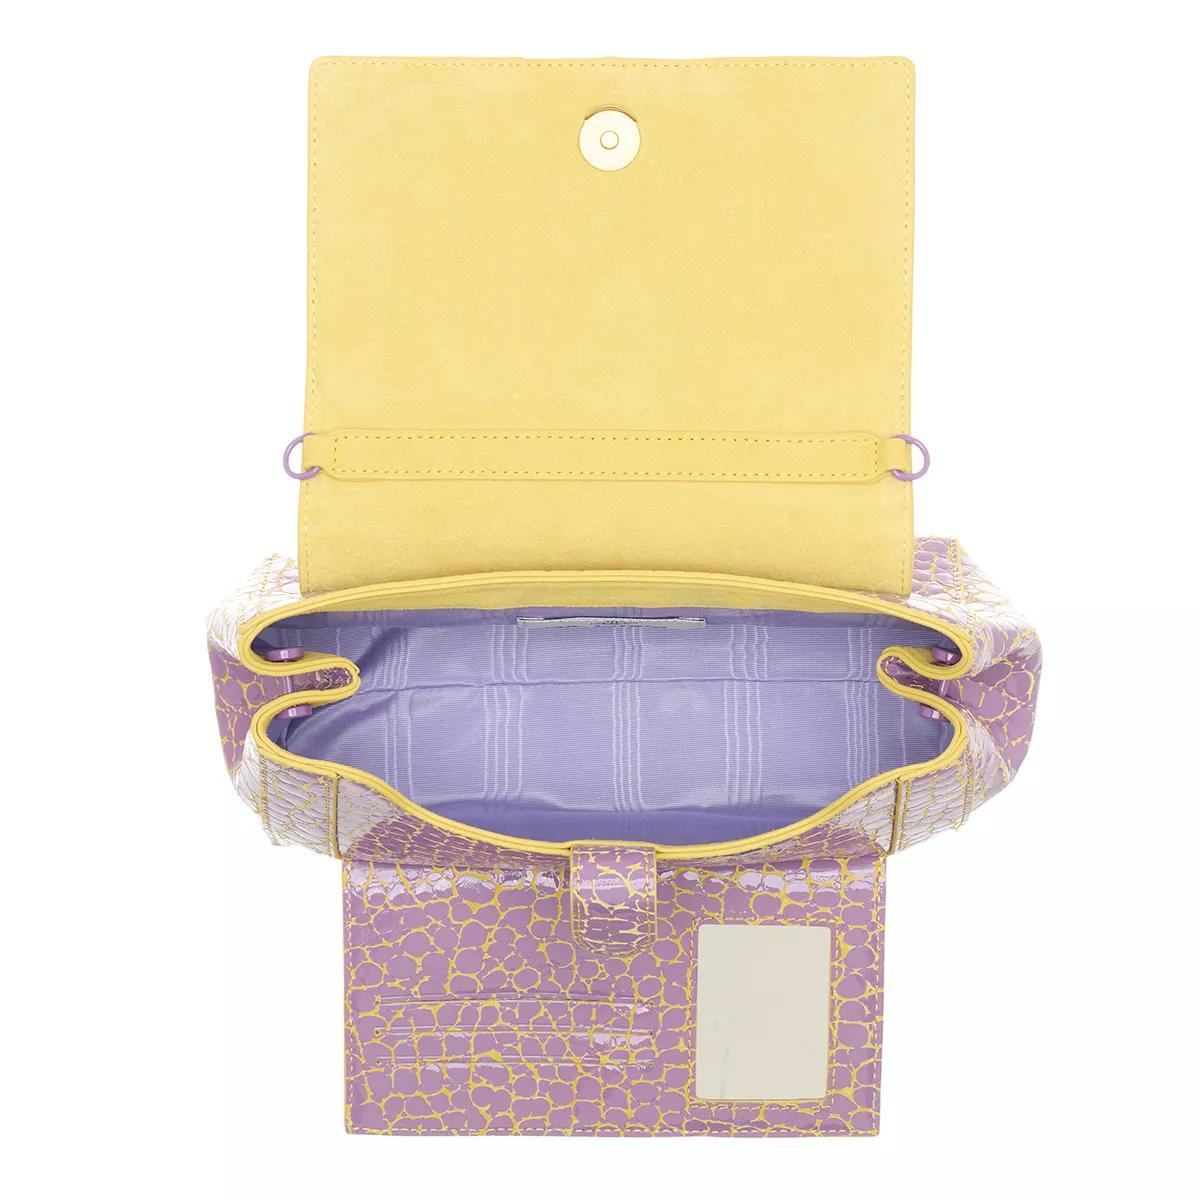 Vivienne Westwood Satchels Hazel Medium Handbag in geel